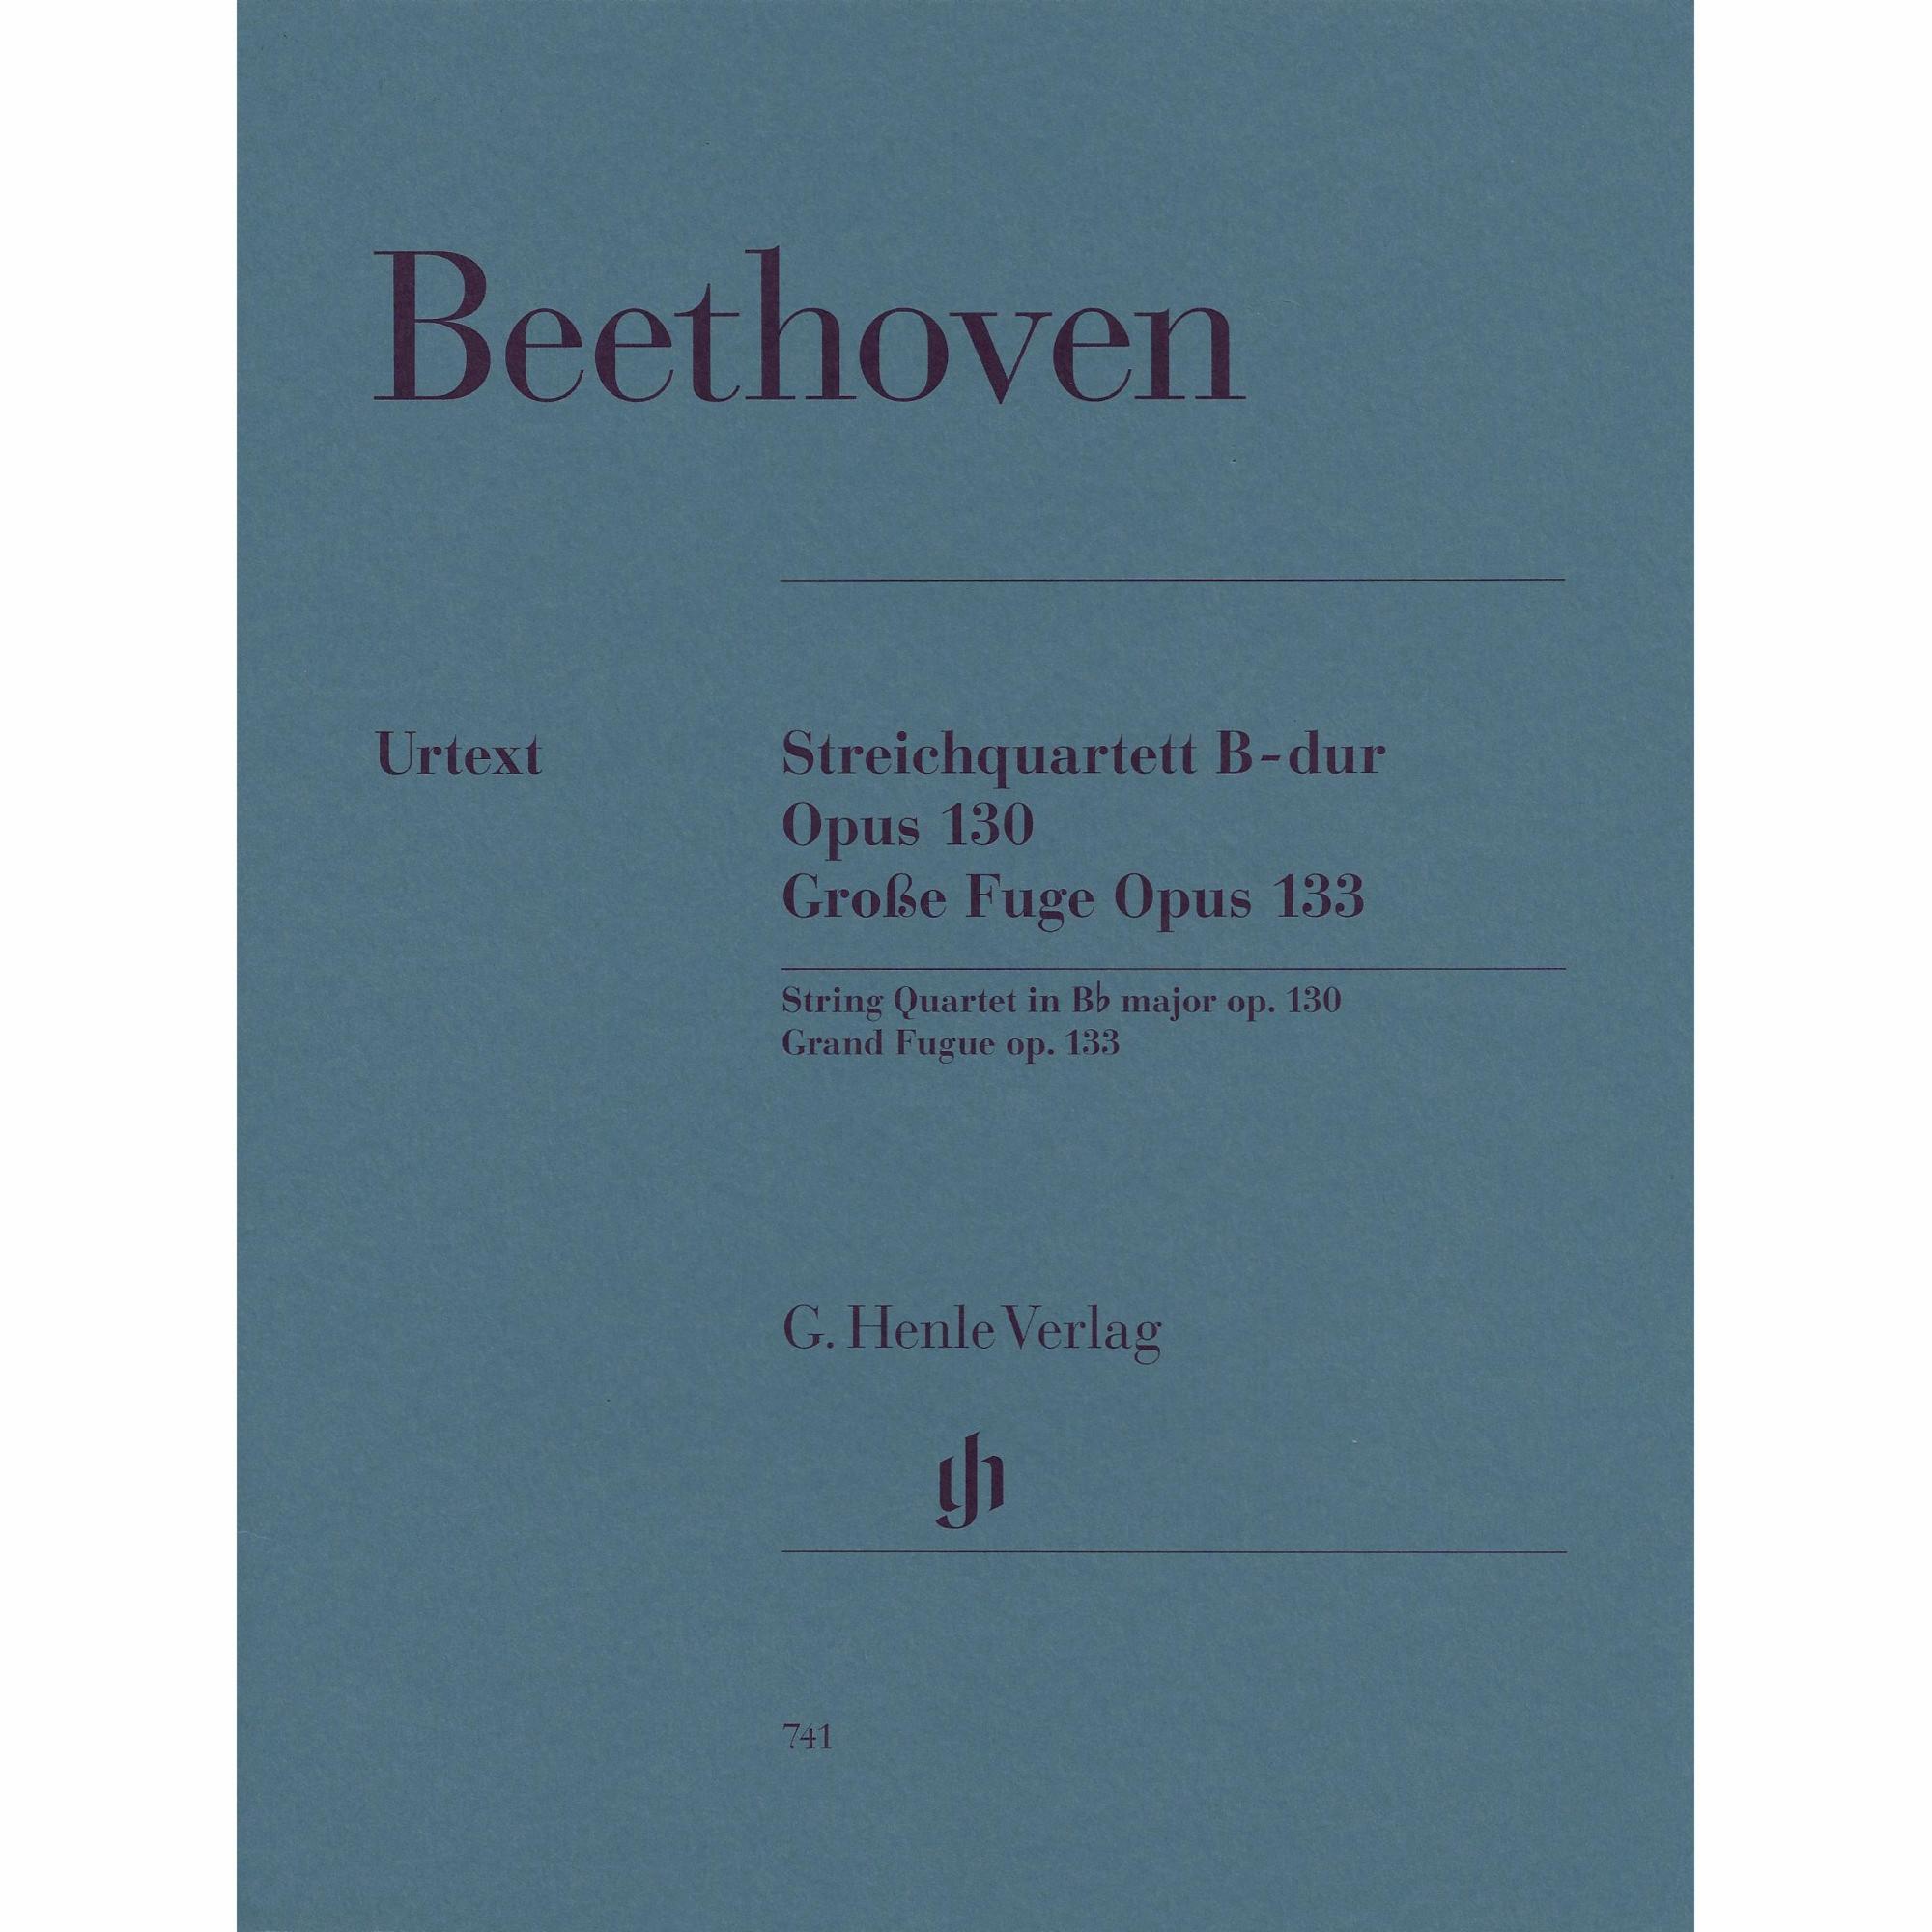 Beethoven -- String Quartet in B-flat Major, Op. 127 and Grosse Fuge, Op. 133